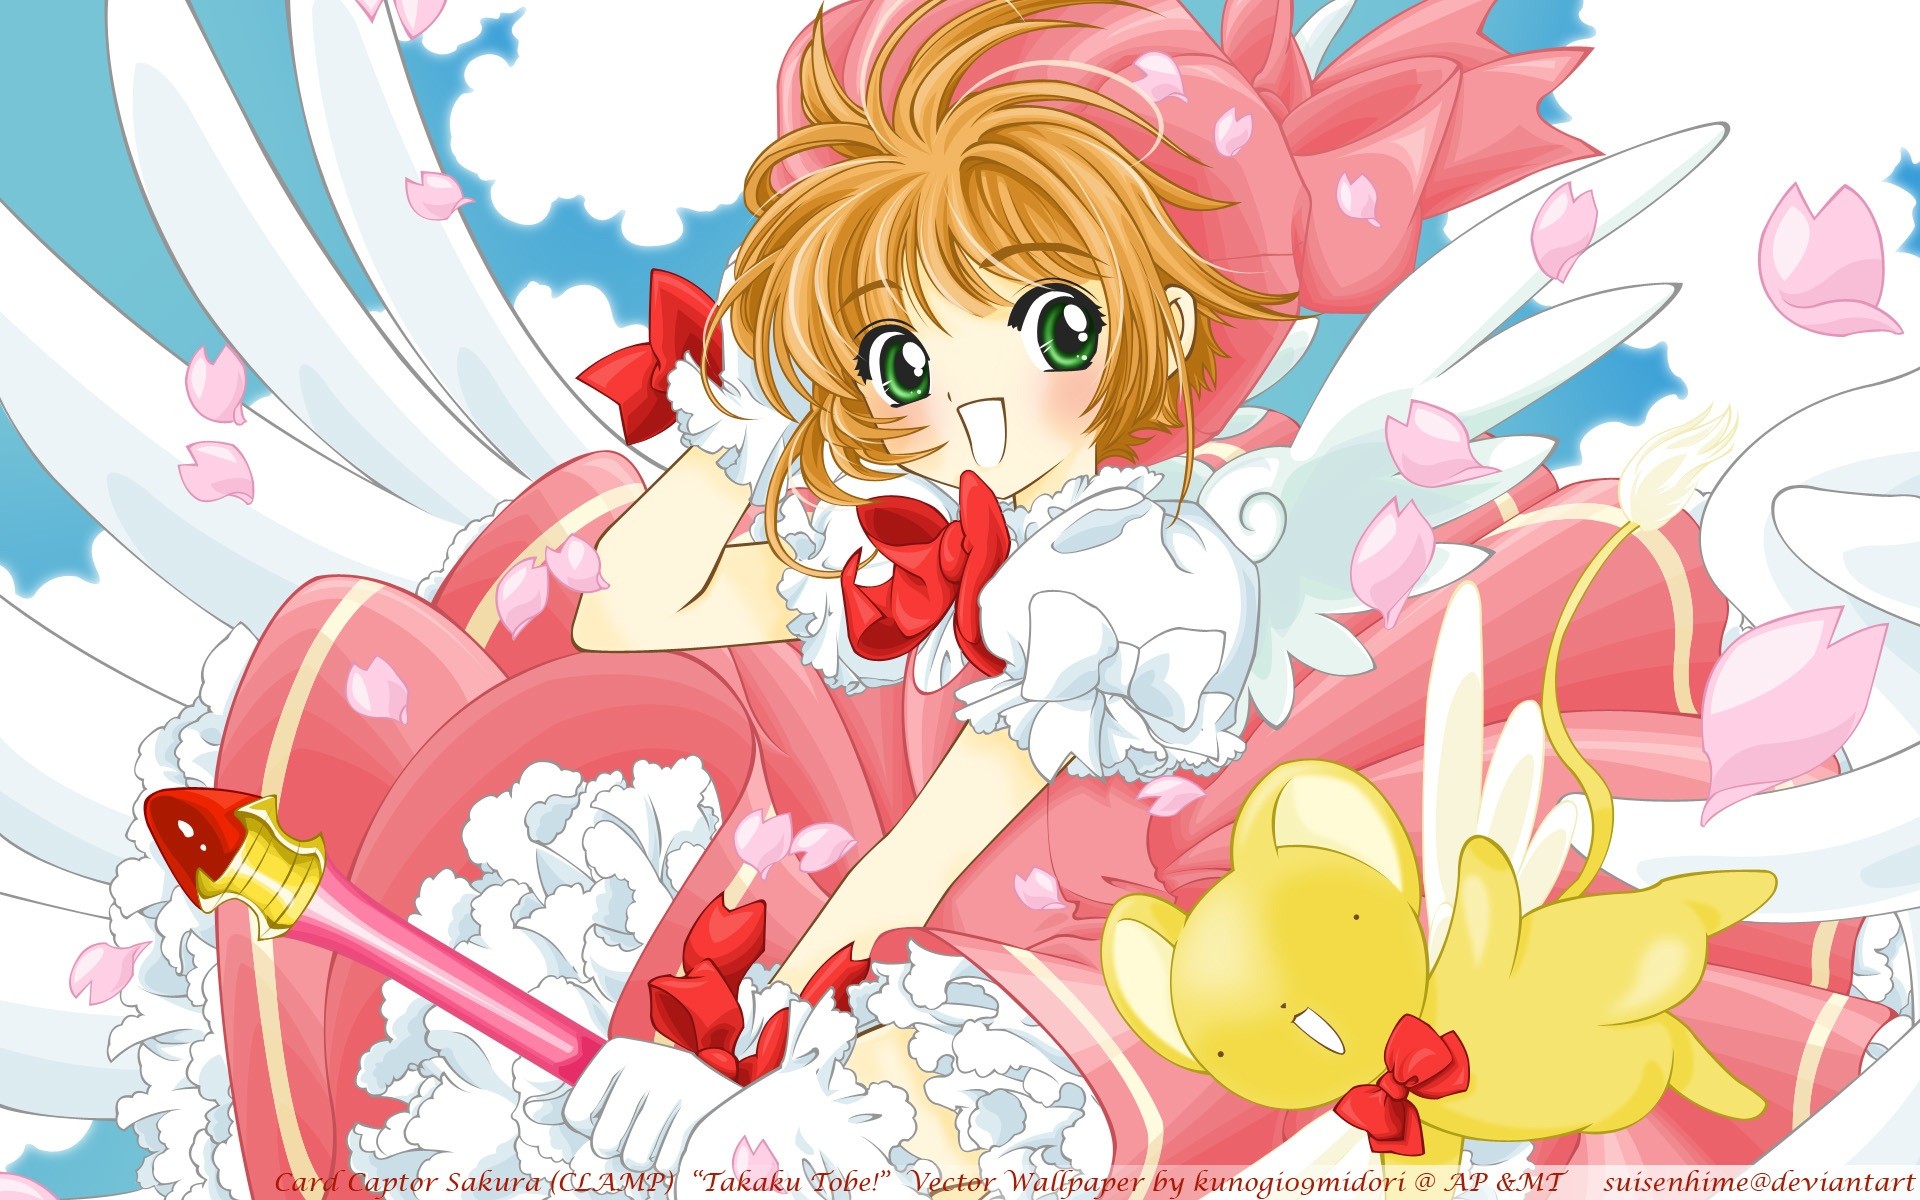 8. "Sakura Kinomoto" from Cardcaptor Sakura - wide 6